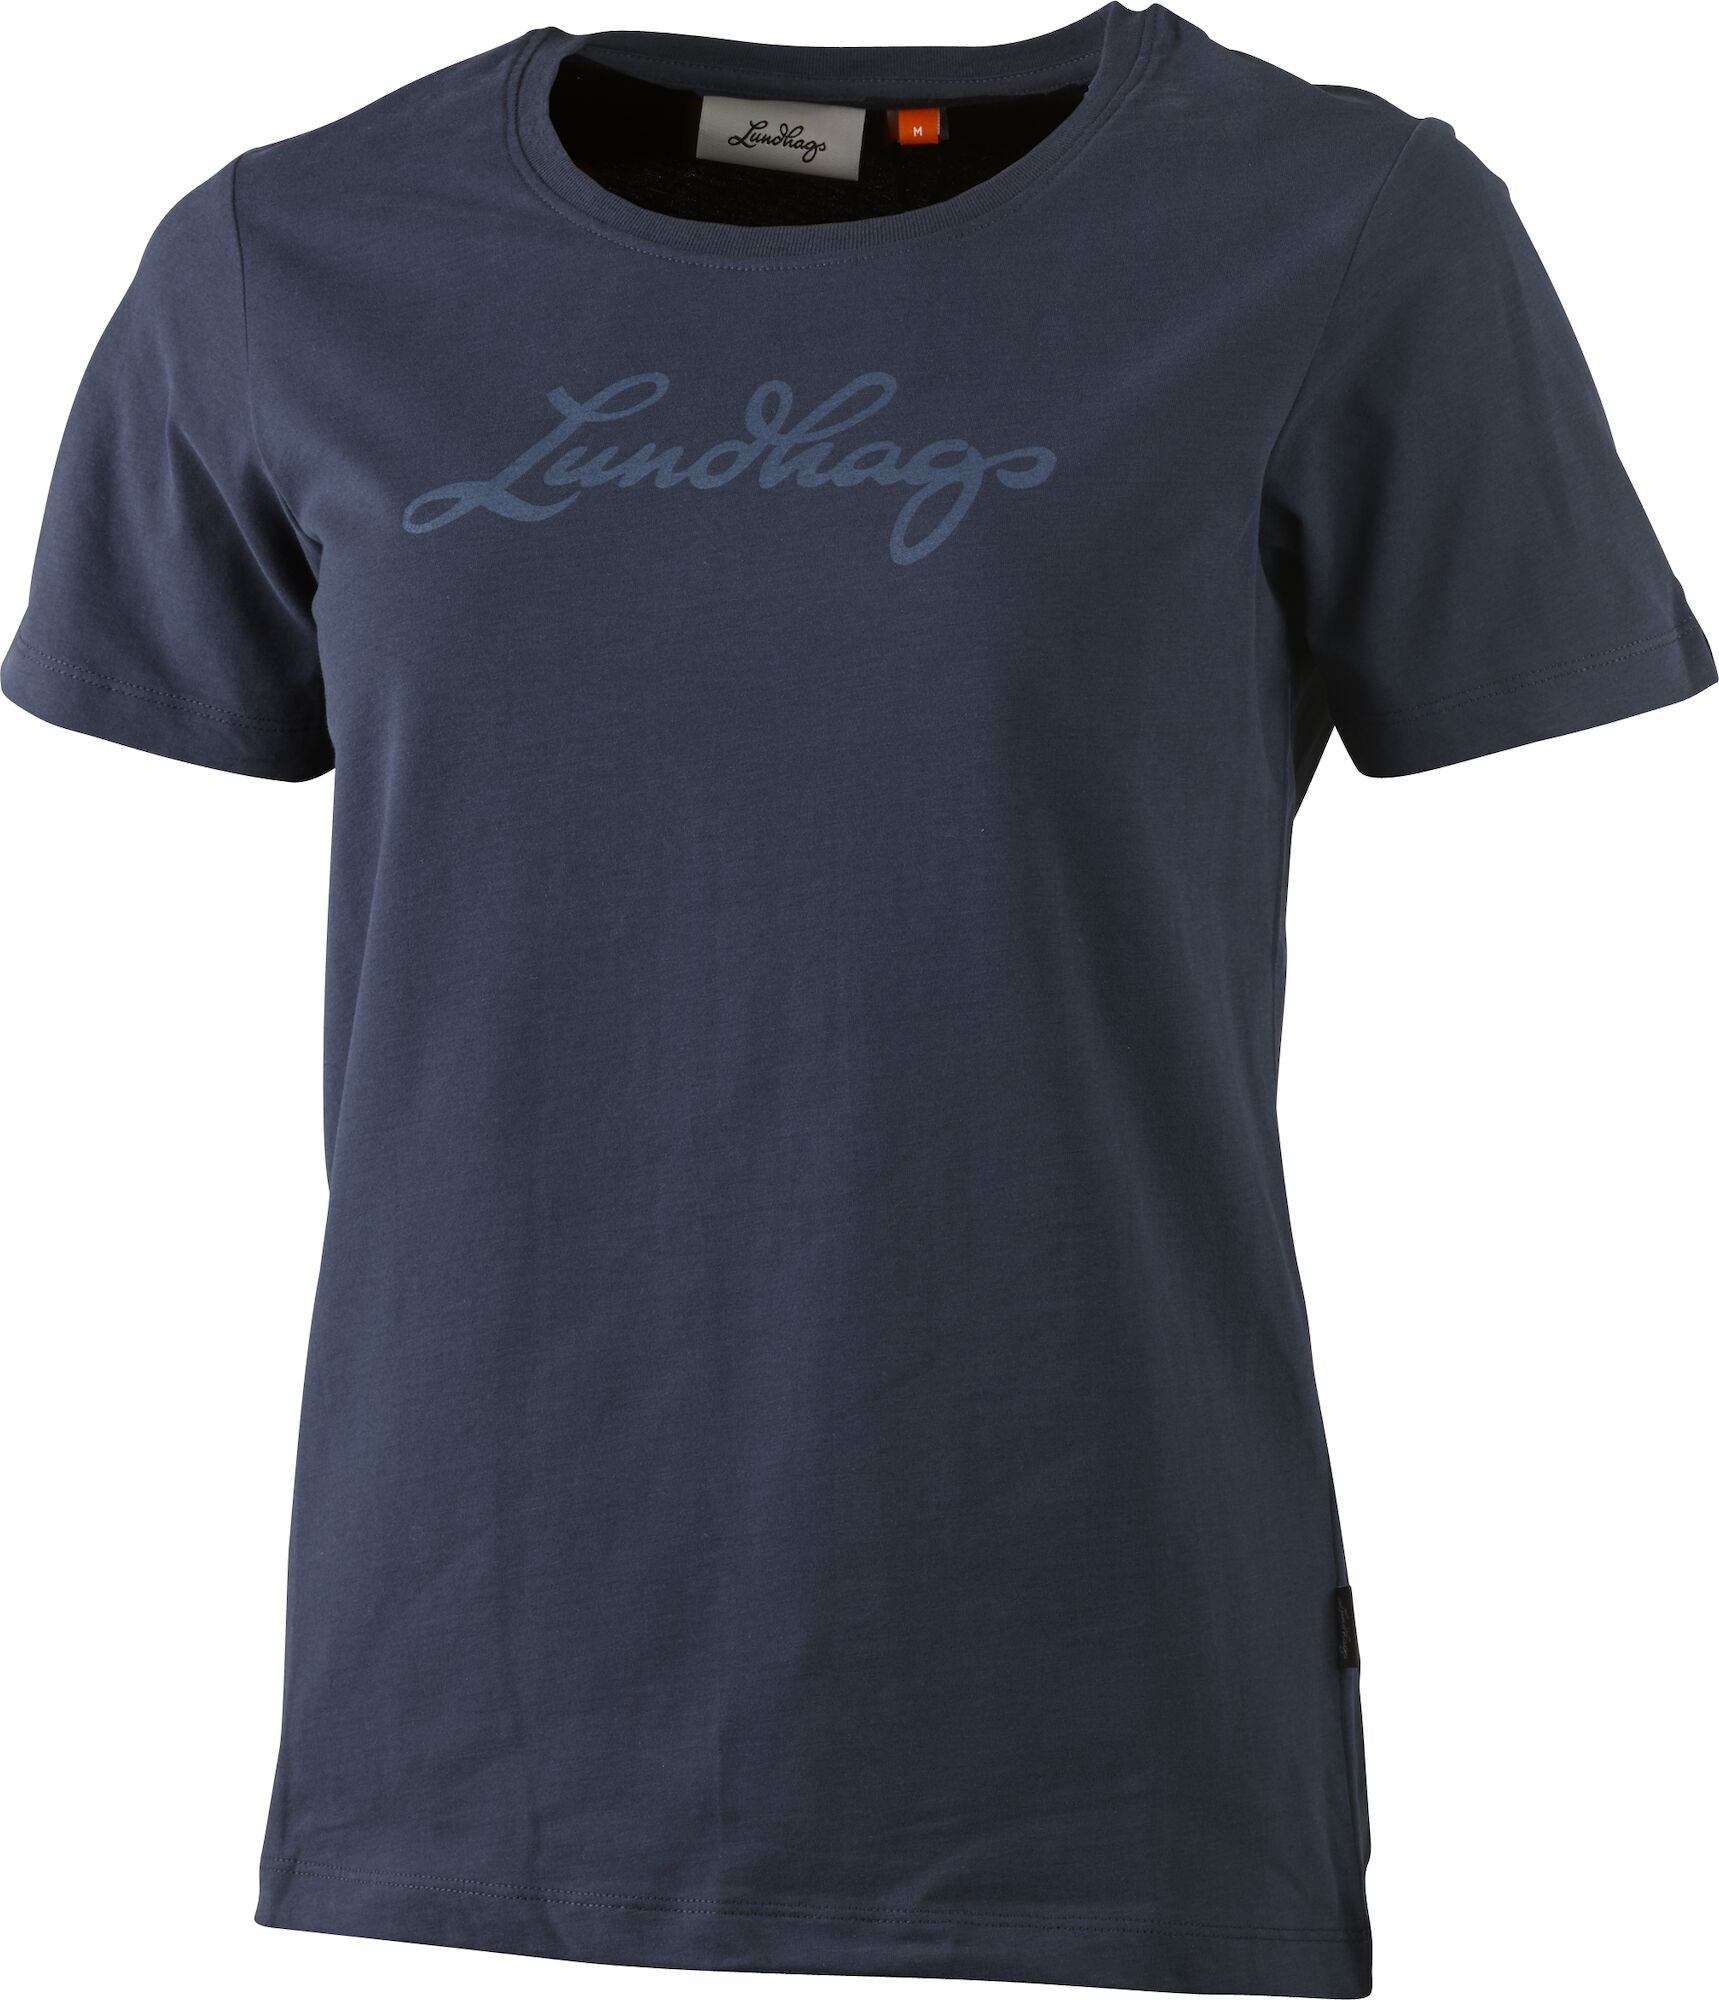 Lundhags T-shirt Women